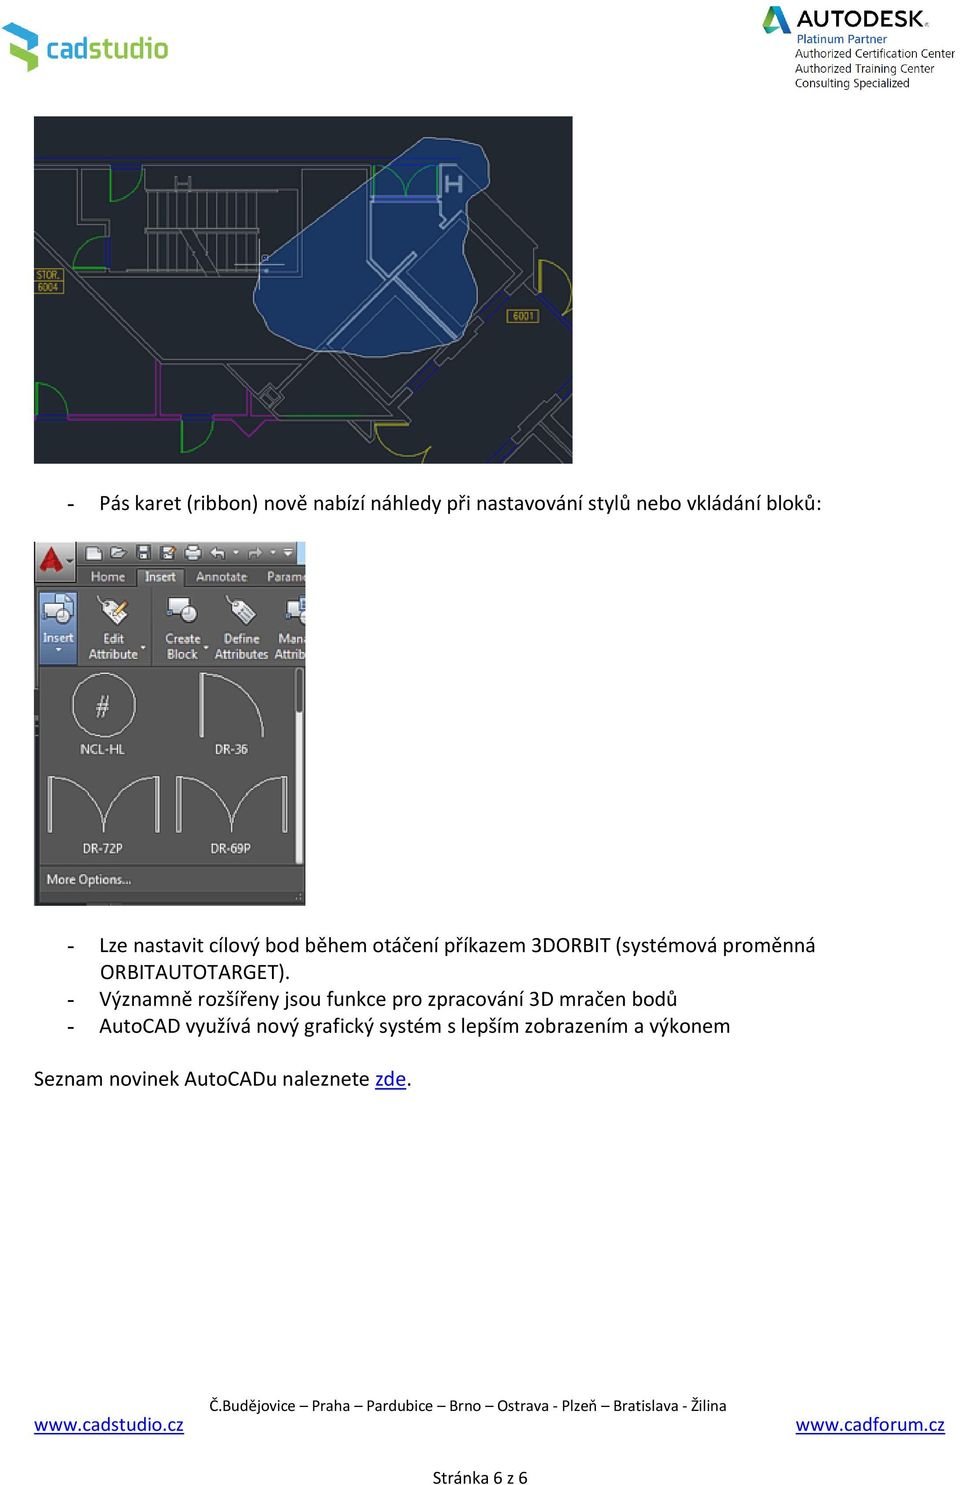 - Významně rozšířeny jsou funkce pro zpracování 3D mračen bodů - AutoCAD využívá nový